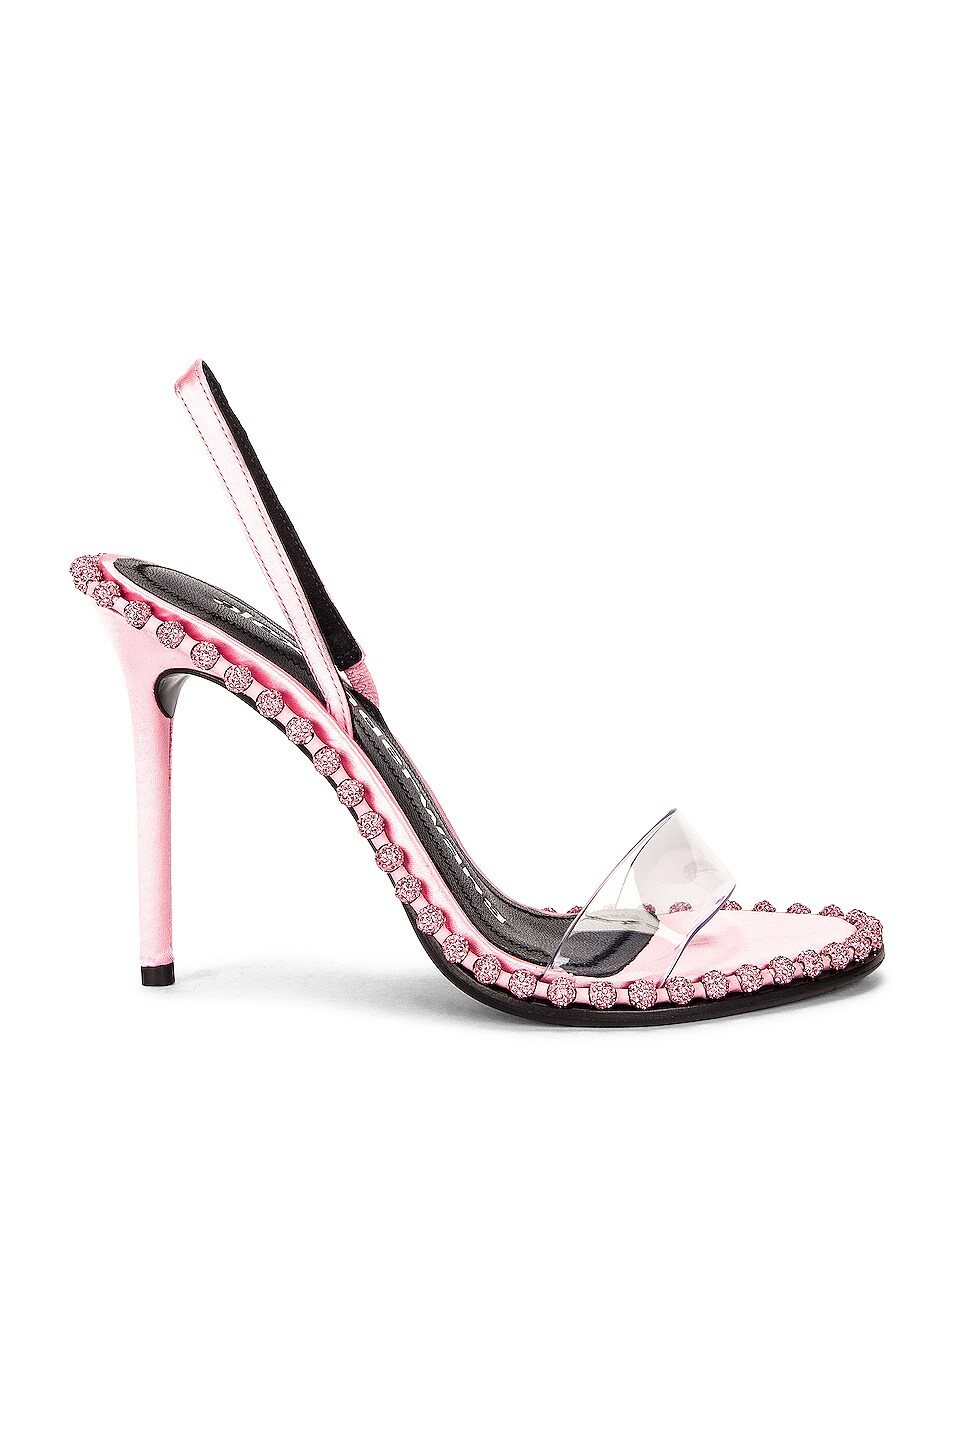 Alexander Wang Nova Crystal Sandal in Prism Pink | FWRD